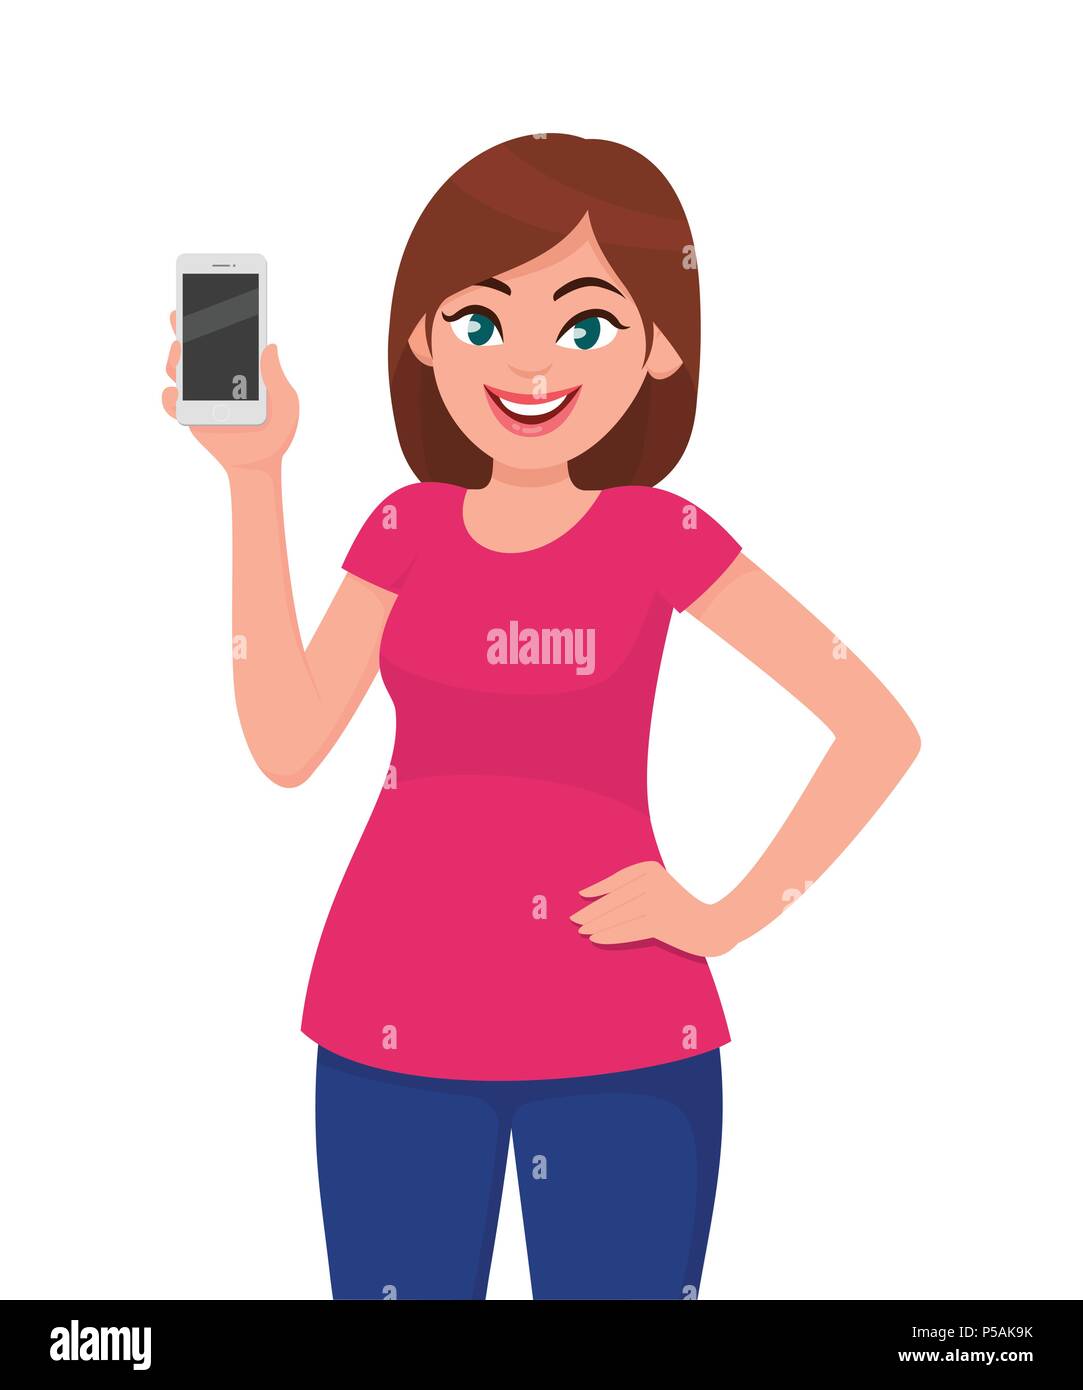 Junge Frau mit Handy/Smartphone. Menschliche Emotion und Körpersprache Konzept Abbildung in Vektor cartoon Flat Style. Stock Vektor